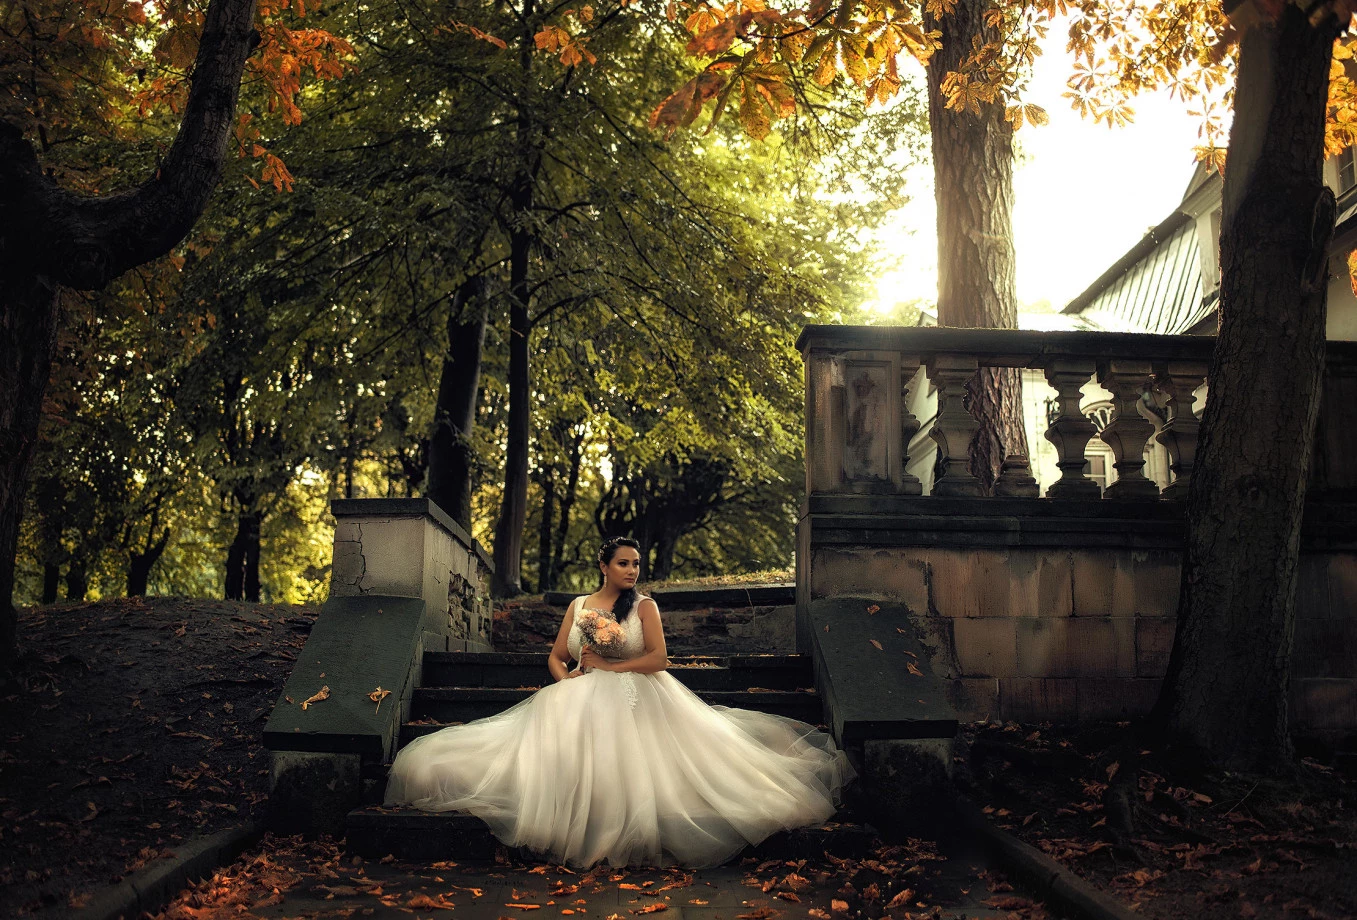 zdjęcia krakow fotograf owak portfolio zdjecia slubne inspiracje wesele plener slubny sesja slubna